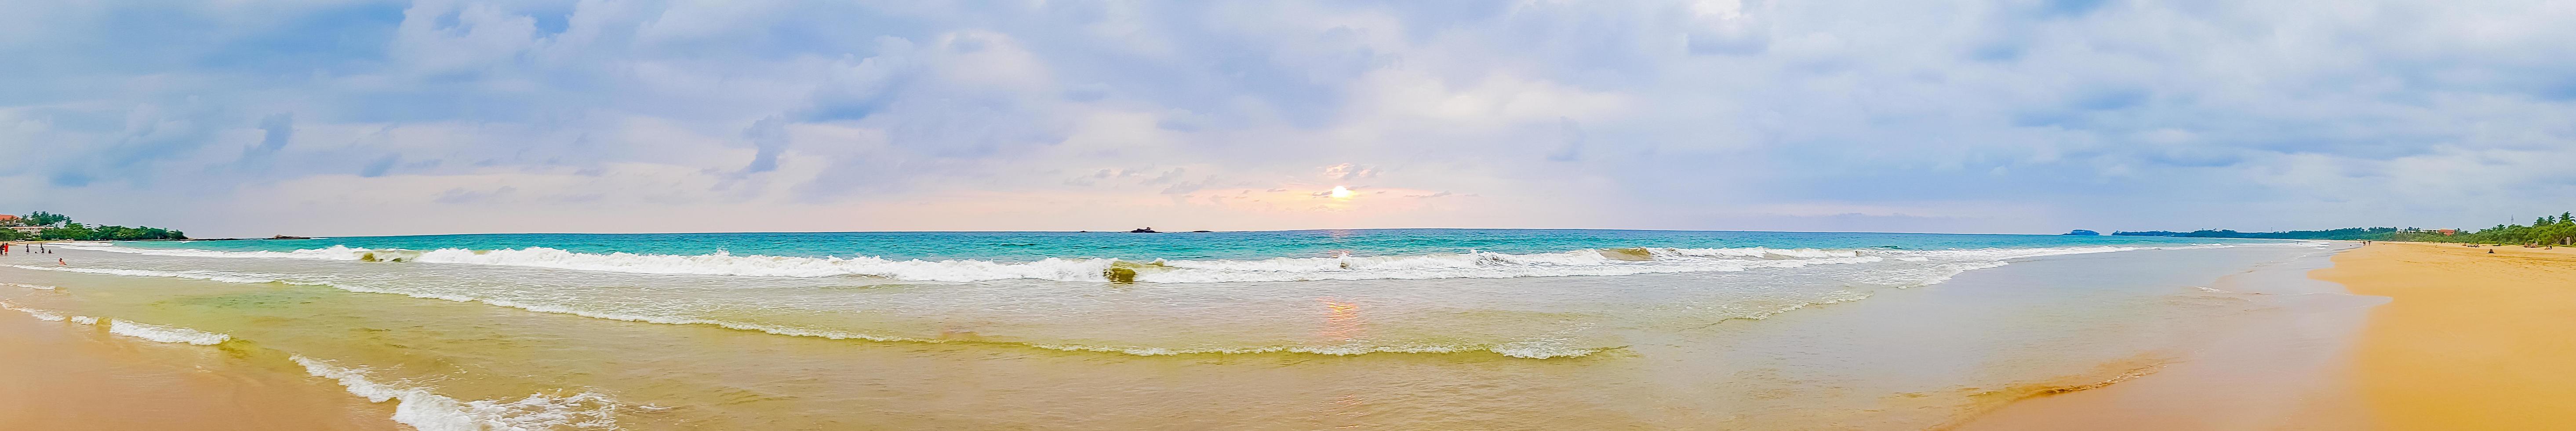 panorama da bela paisagem colorida do pôr do sol da praia de bentota sri lanka foto